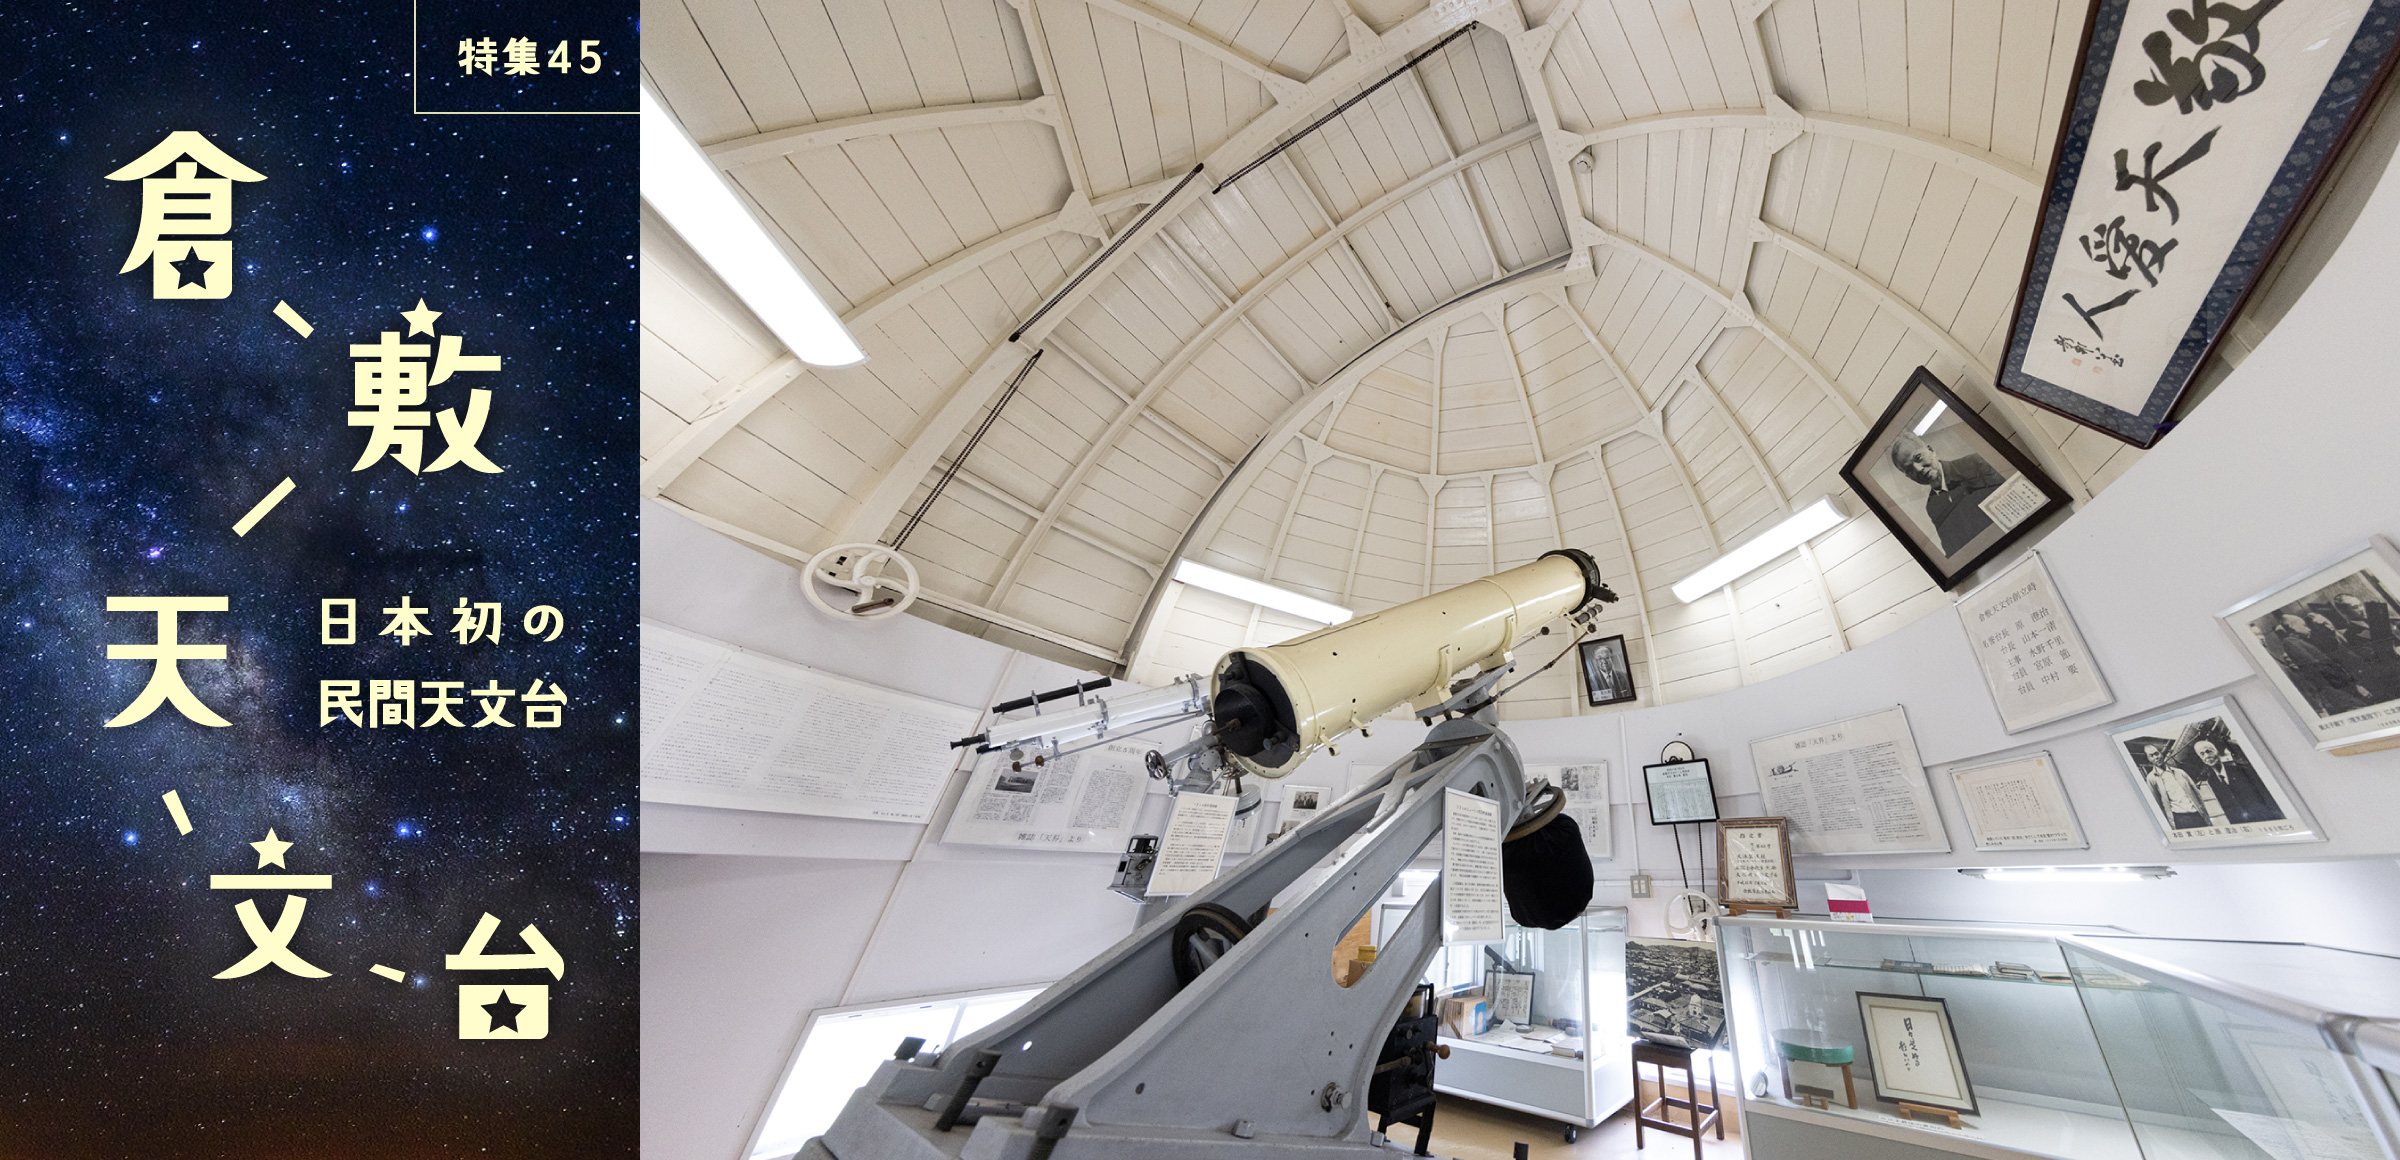 特集45 日本初の民間天文台 倉敷天文台 「誰もが利用できる天文台を」と設立された日本初の民間天文台